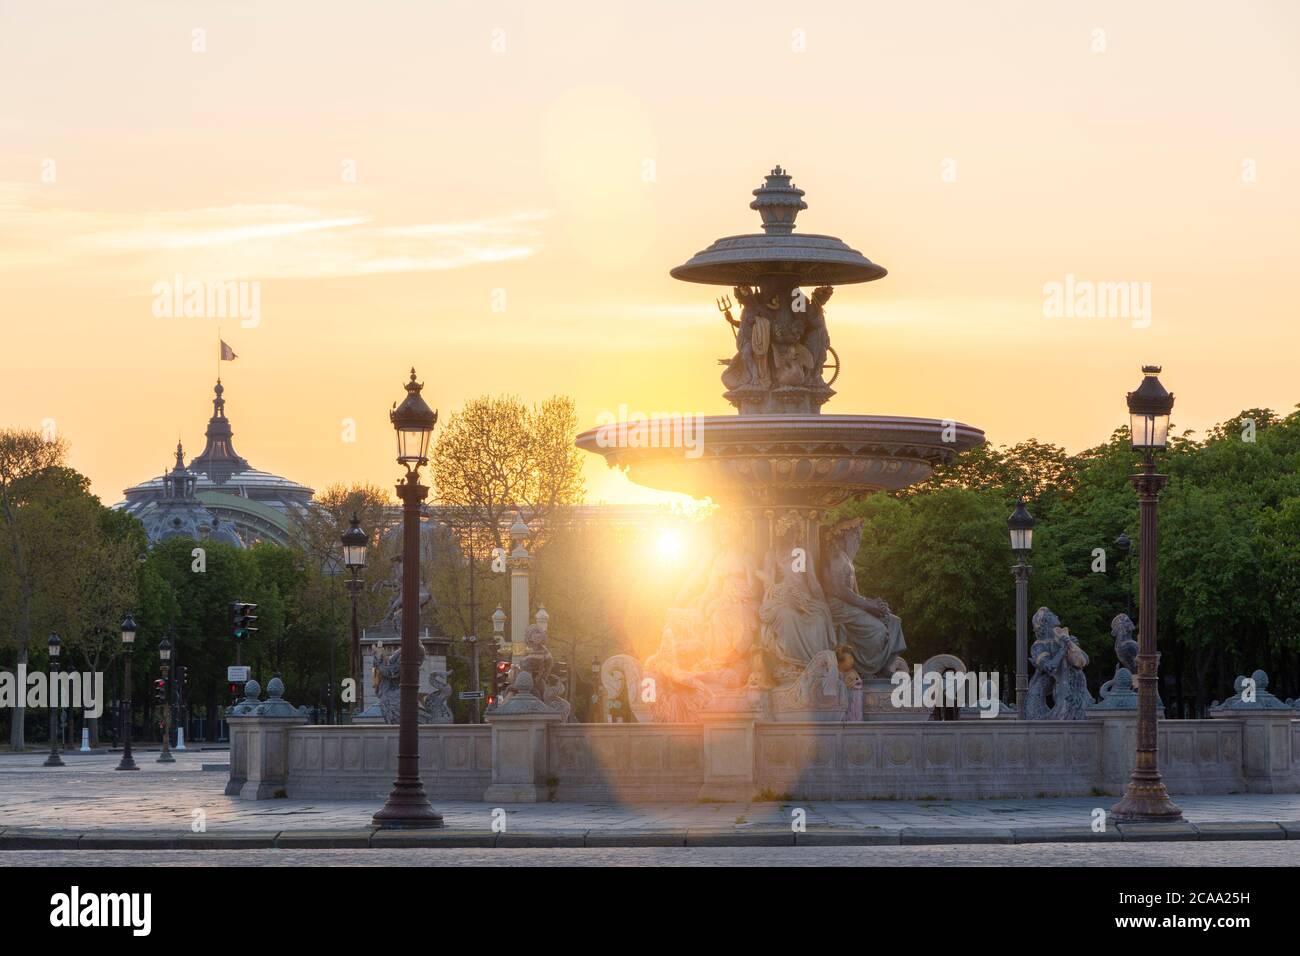 Place de la concorde at sunset, Paris Stock Photo